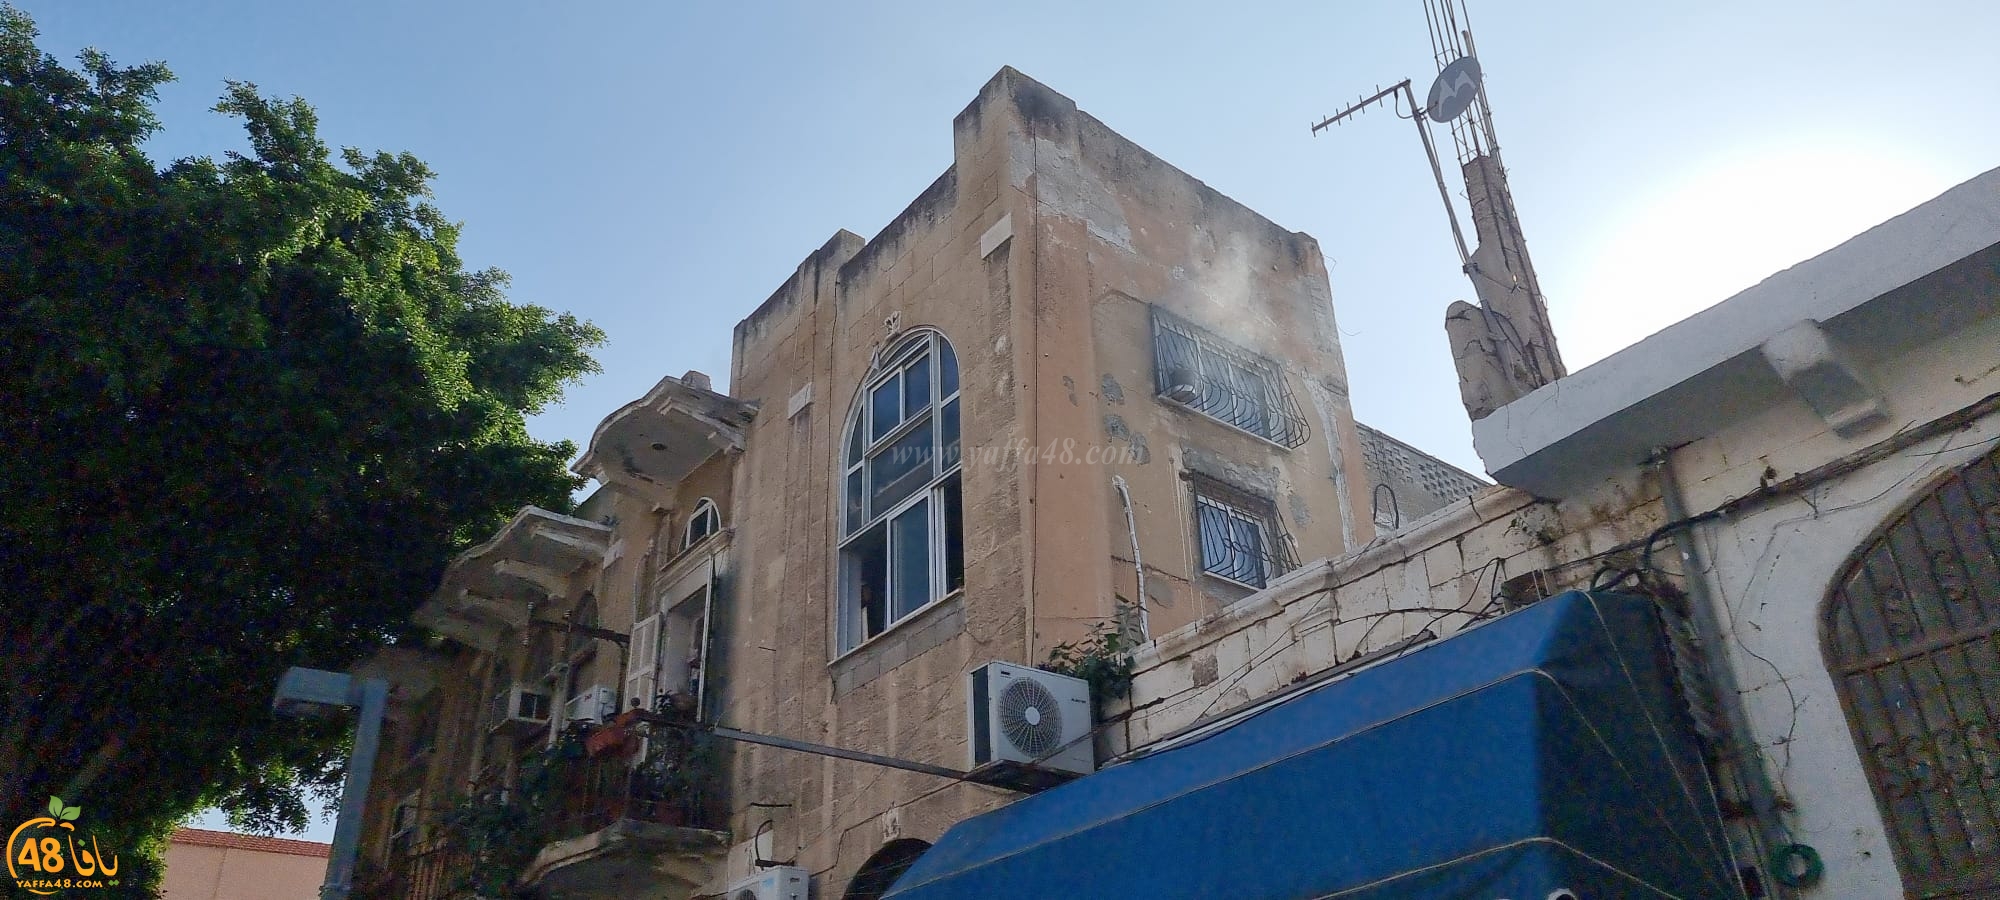 حريق داخل شقة سكنية بمدينة يافا دون وقوع إصابات